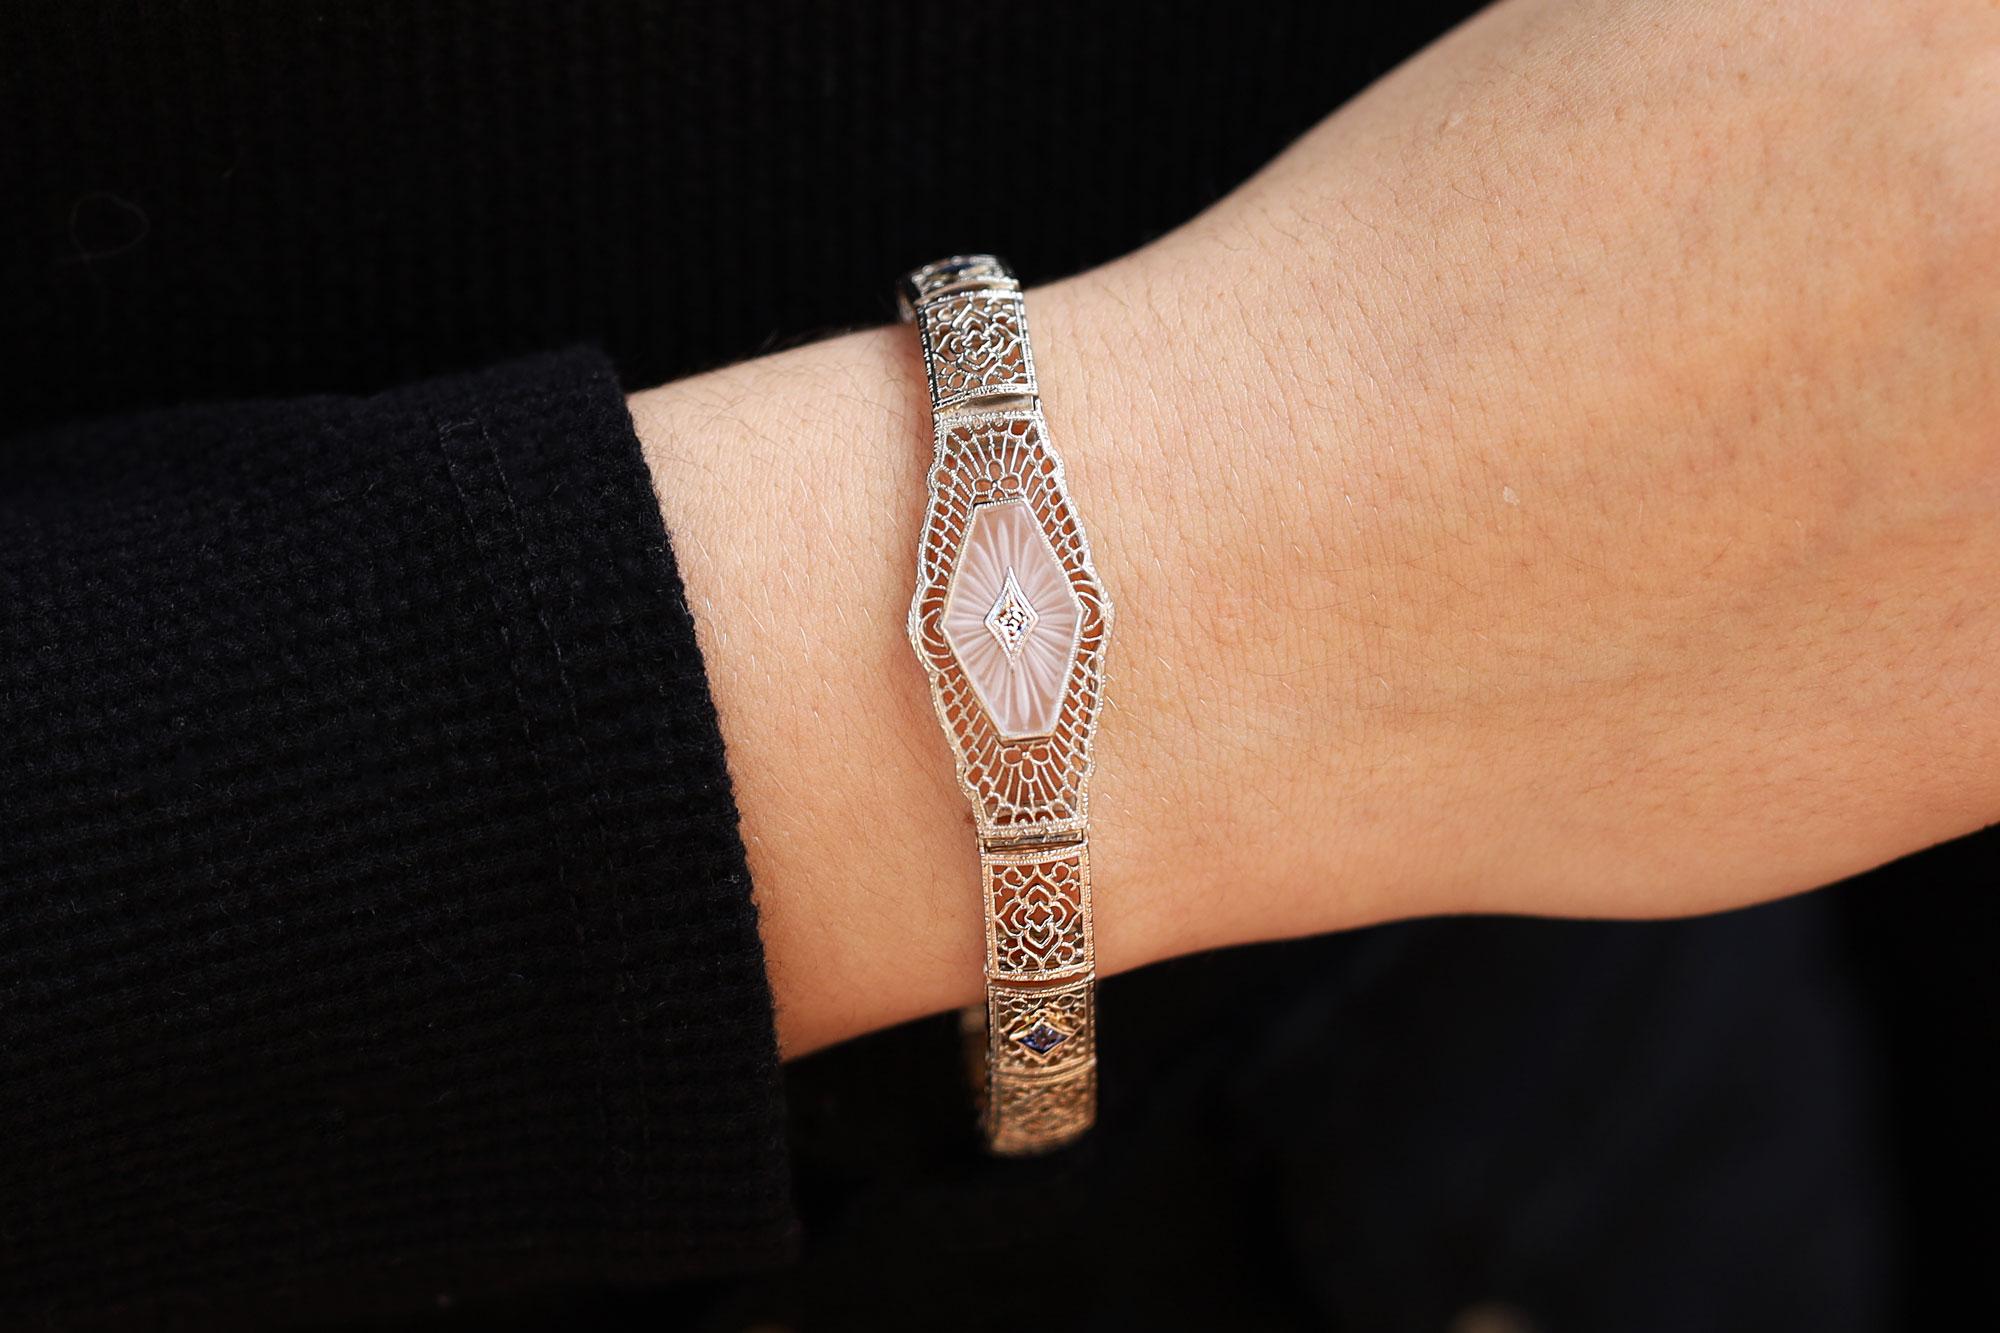 Ein fabelhaftes filigranes Armband, in dessen Zentrum eine geschnitzte Bergkristallplakette mit Sonnenstrahlen steht, zeigt den ganzen Charme des Art Deco. Die durchbrochenen, luftigen Glieder sind fein aus 14-karätigem Weißgold gefertigt und